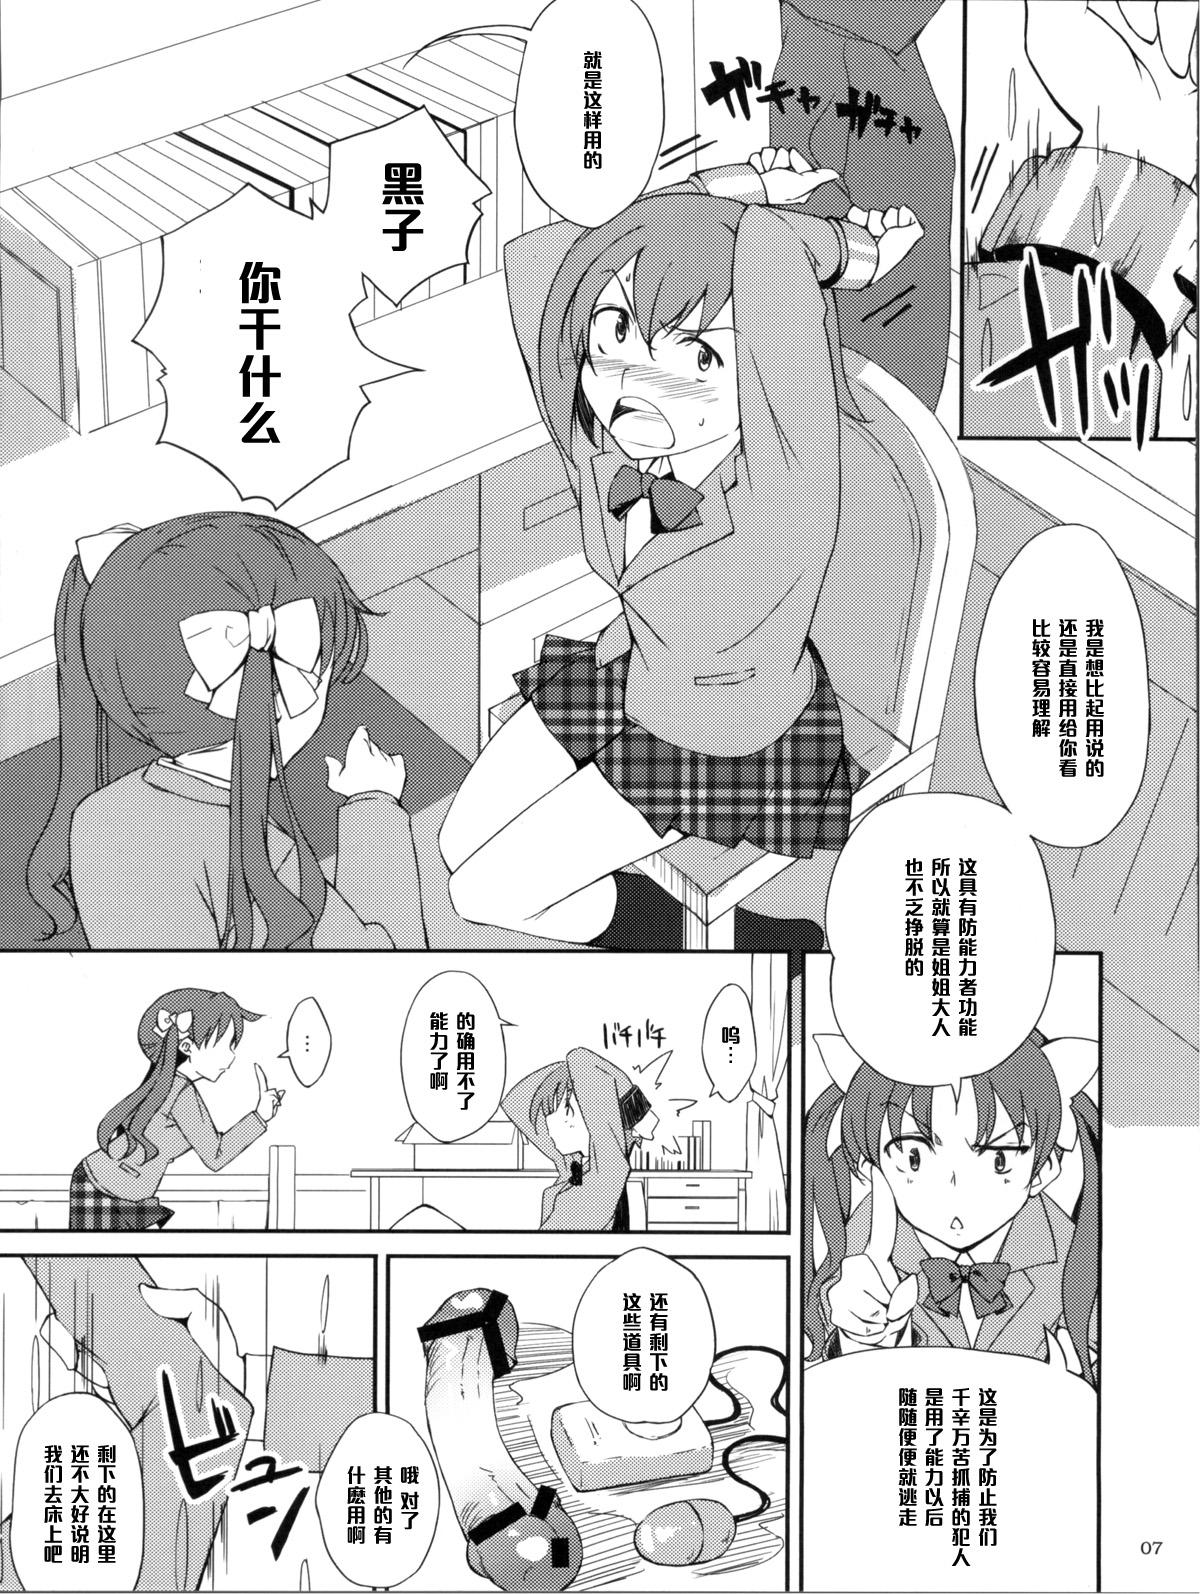 Pussy Fingering Desu no!! - Toaru kagaku no railgun Virginity - Page 7